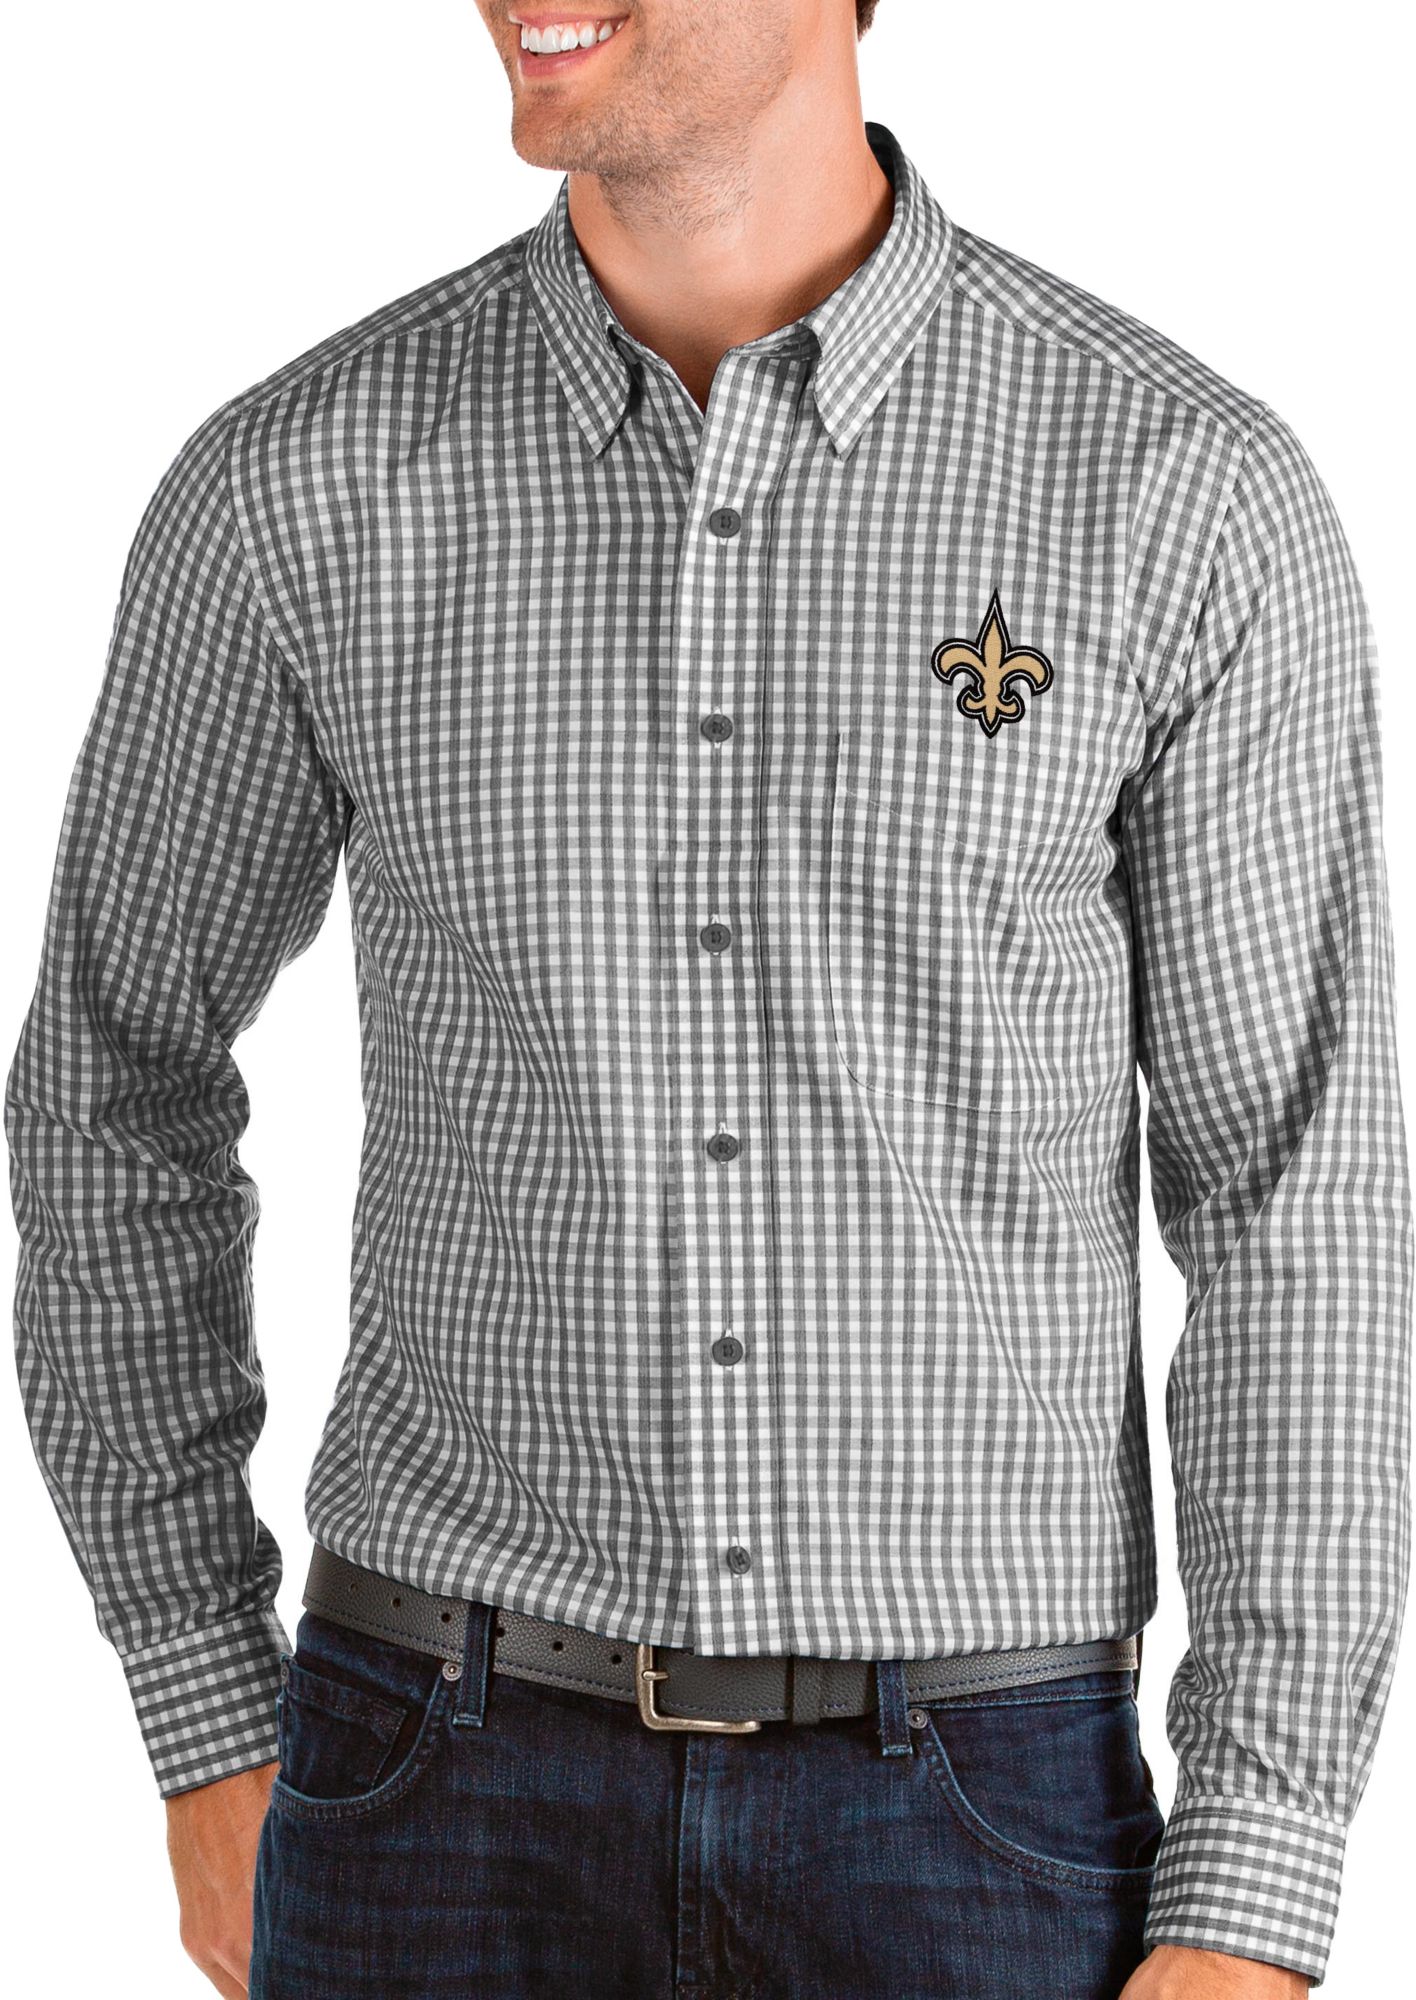 new orleans saints button up shirt